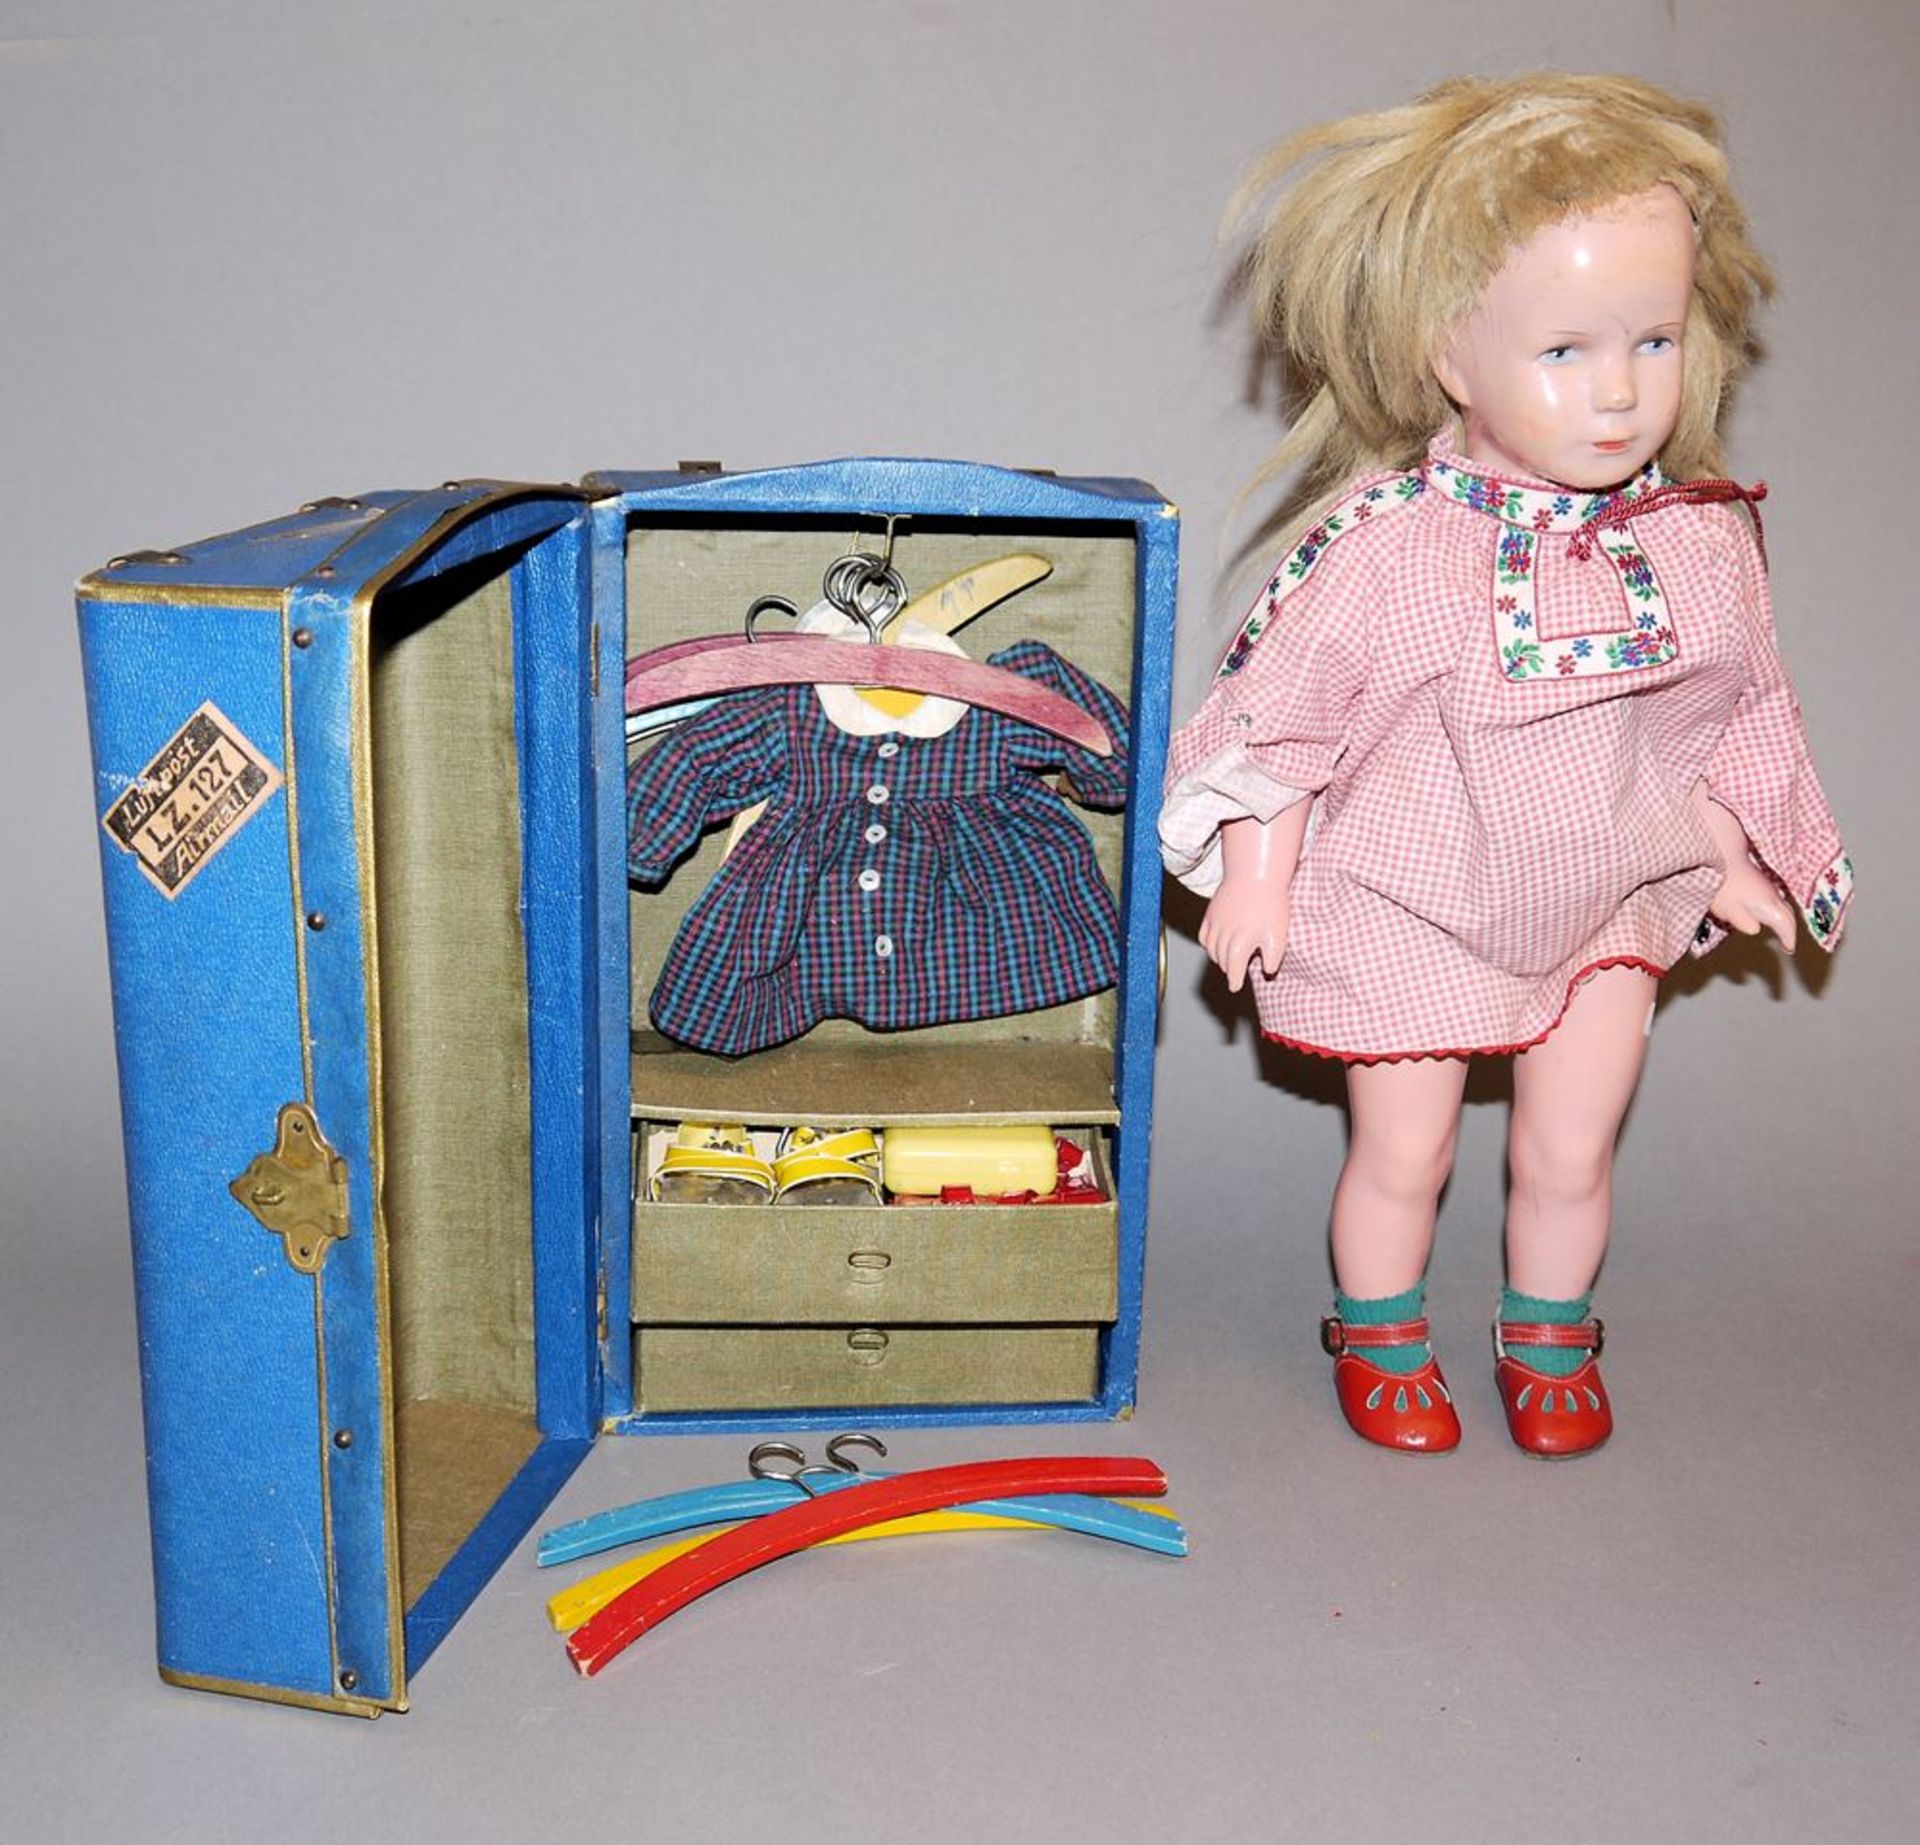 Puppe Modell "Käthe Kruse" von Schildkröt, 1950er Jahre & Puppen-Kofferschrank